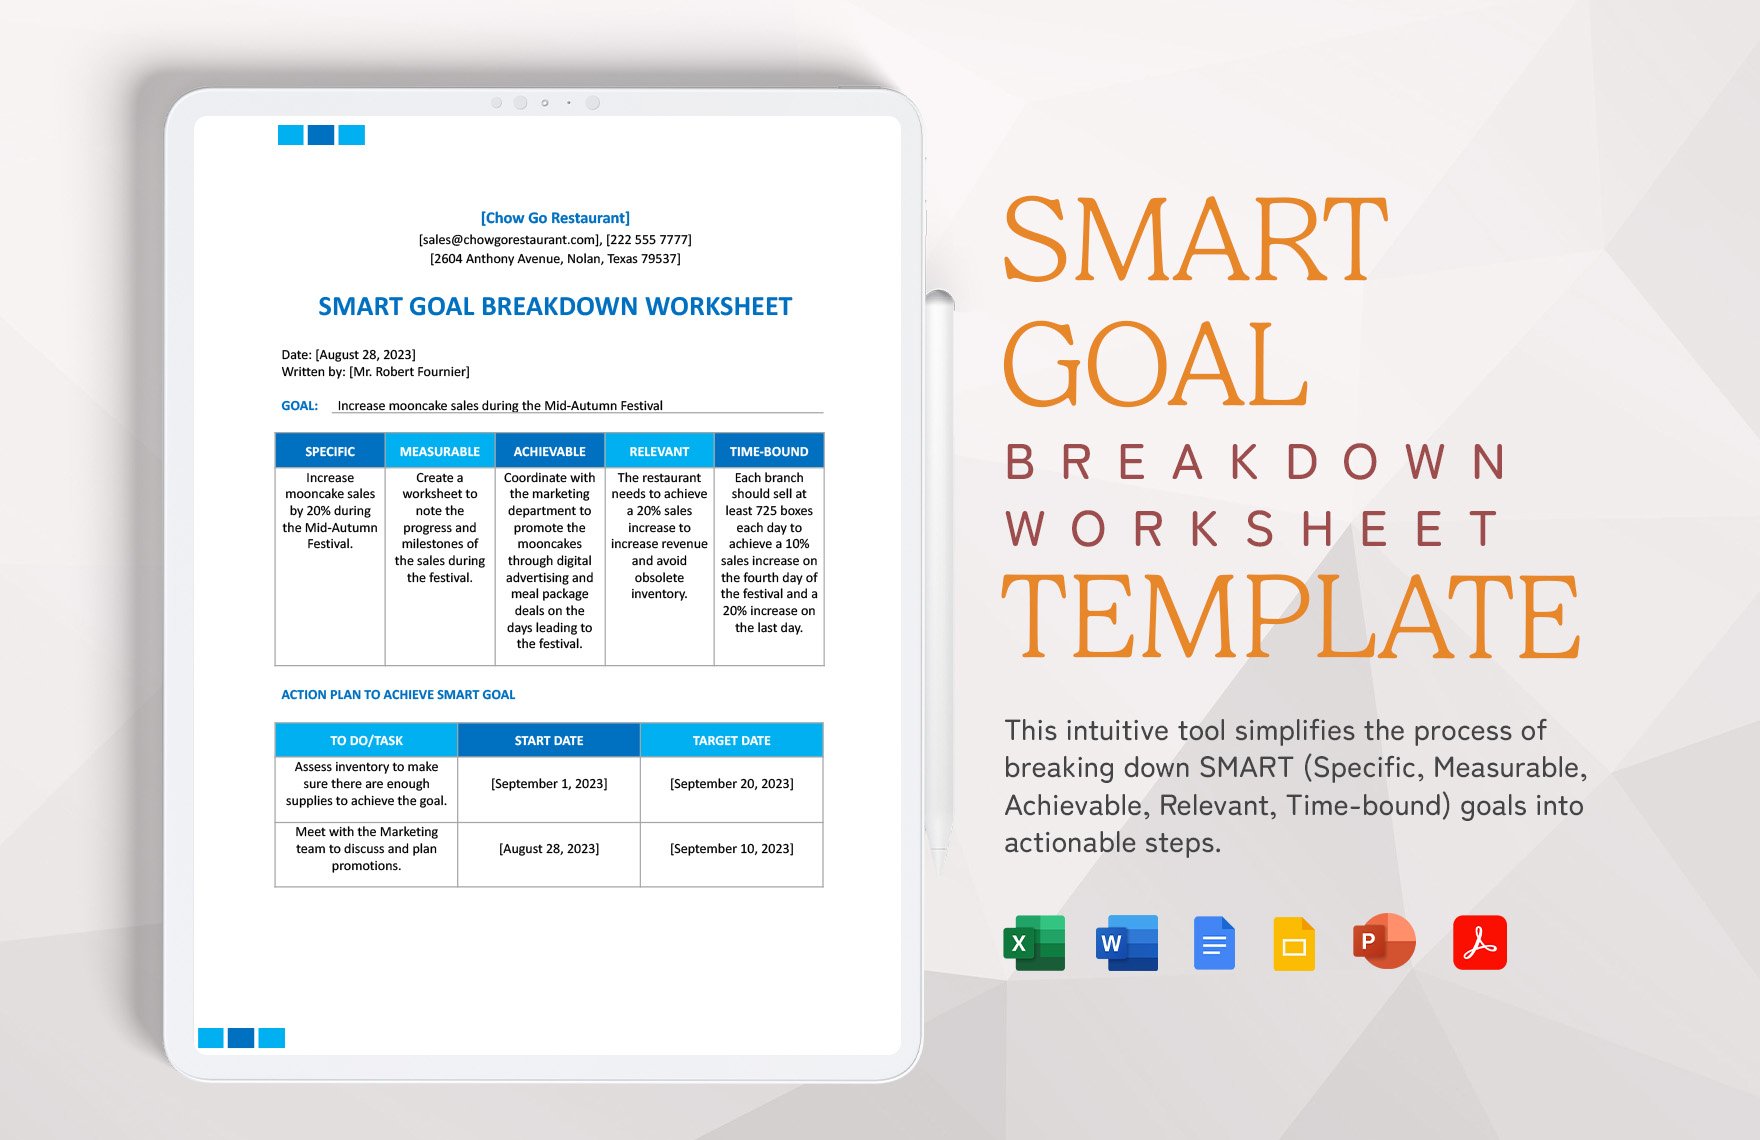 Free Smart Goal Breakdown Worksheet Template in Word, Google Docs, Excel, PDF, PowerPoint, Google Slides